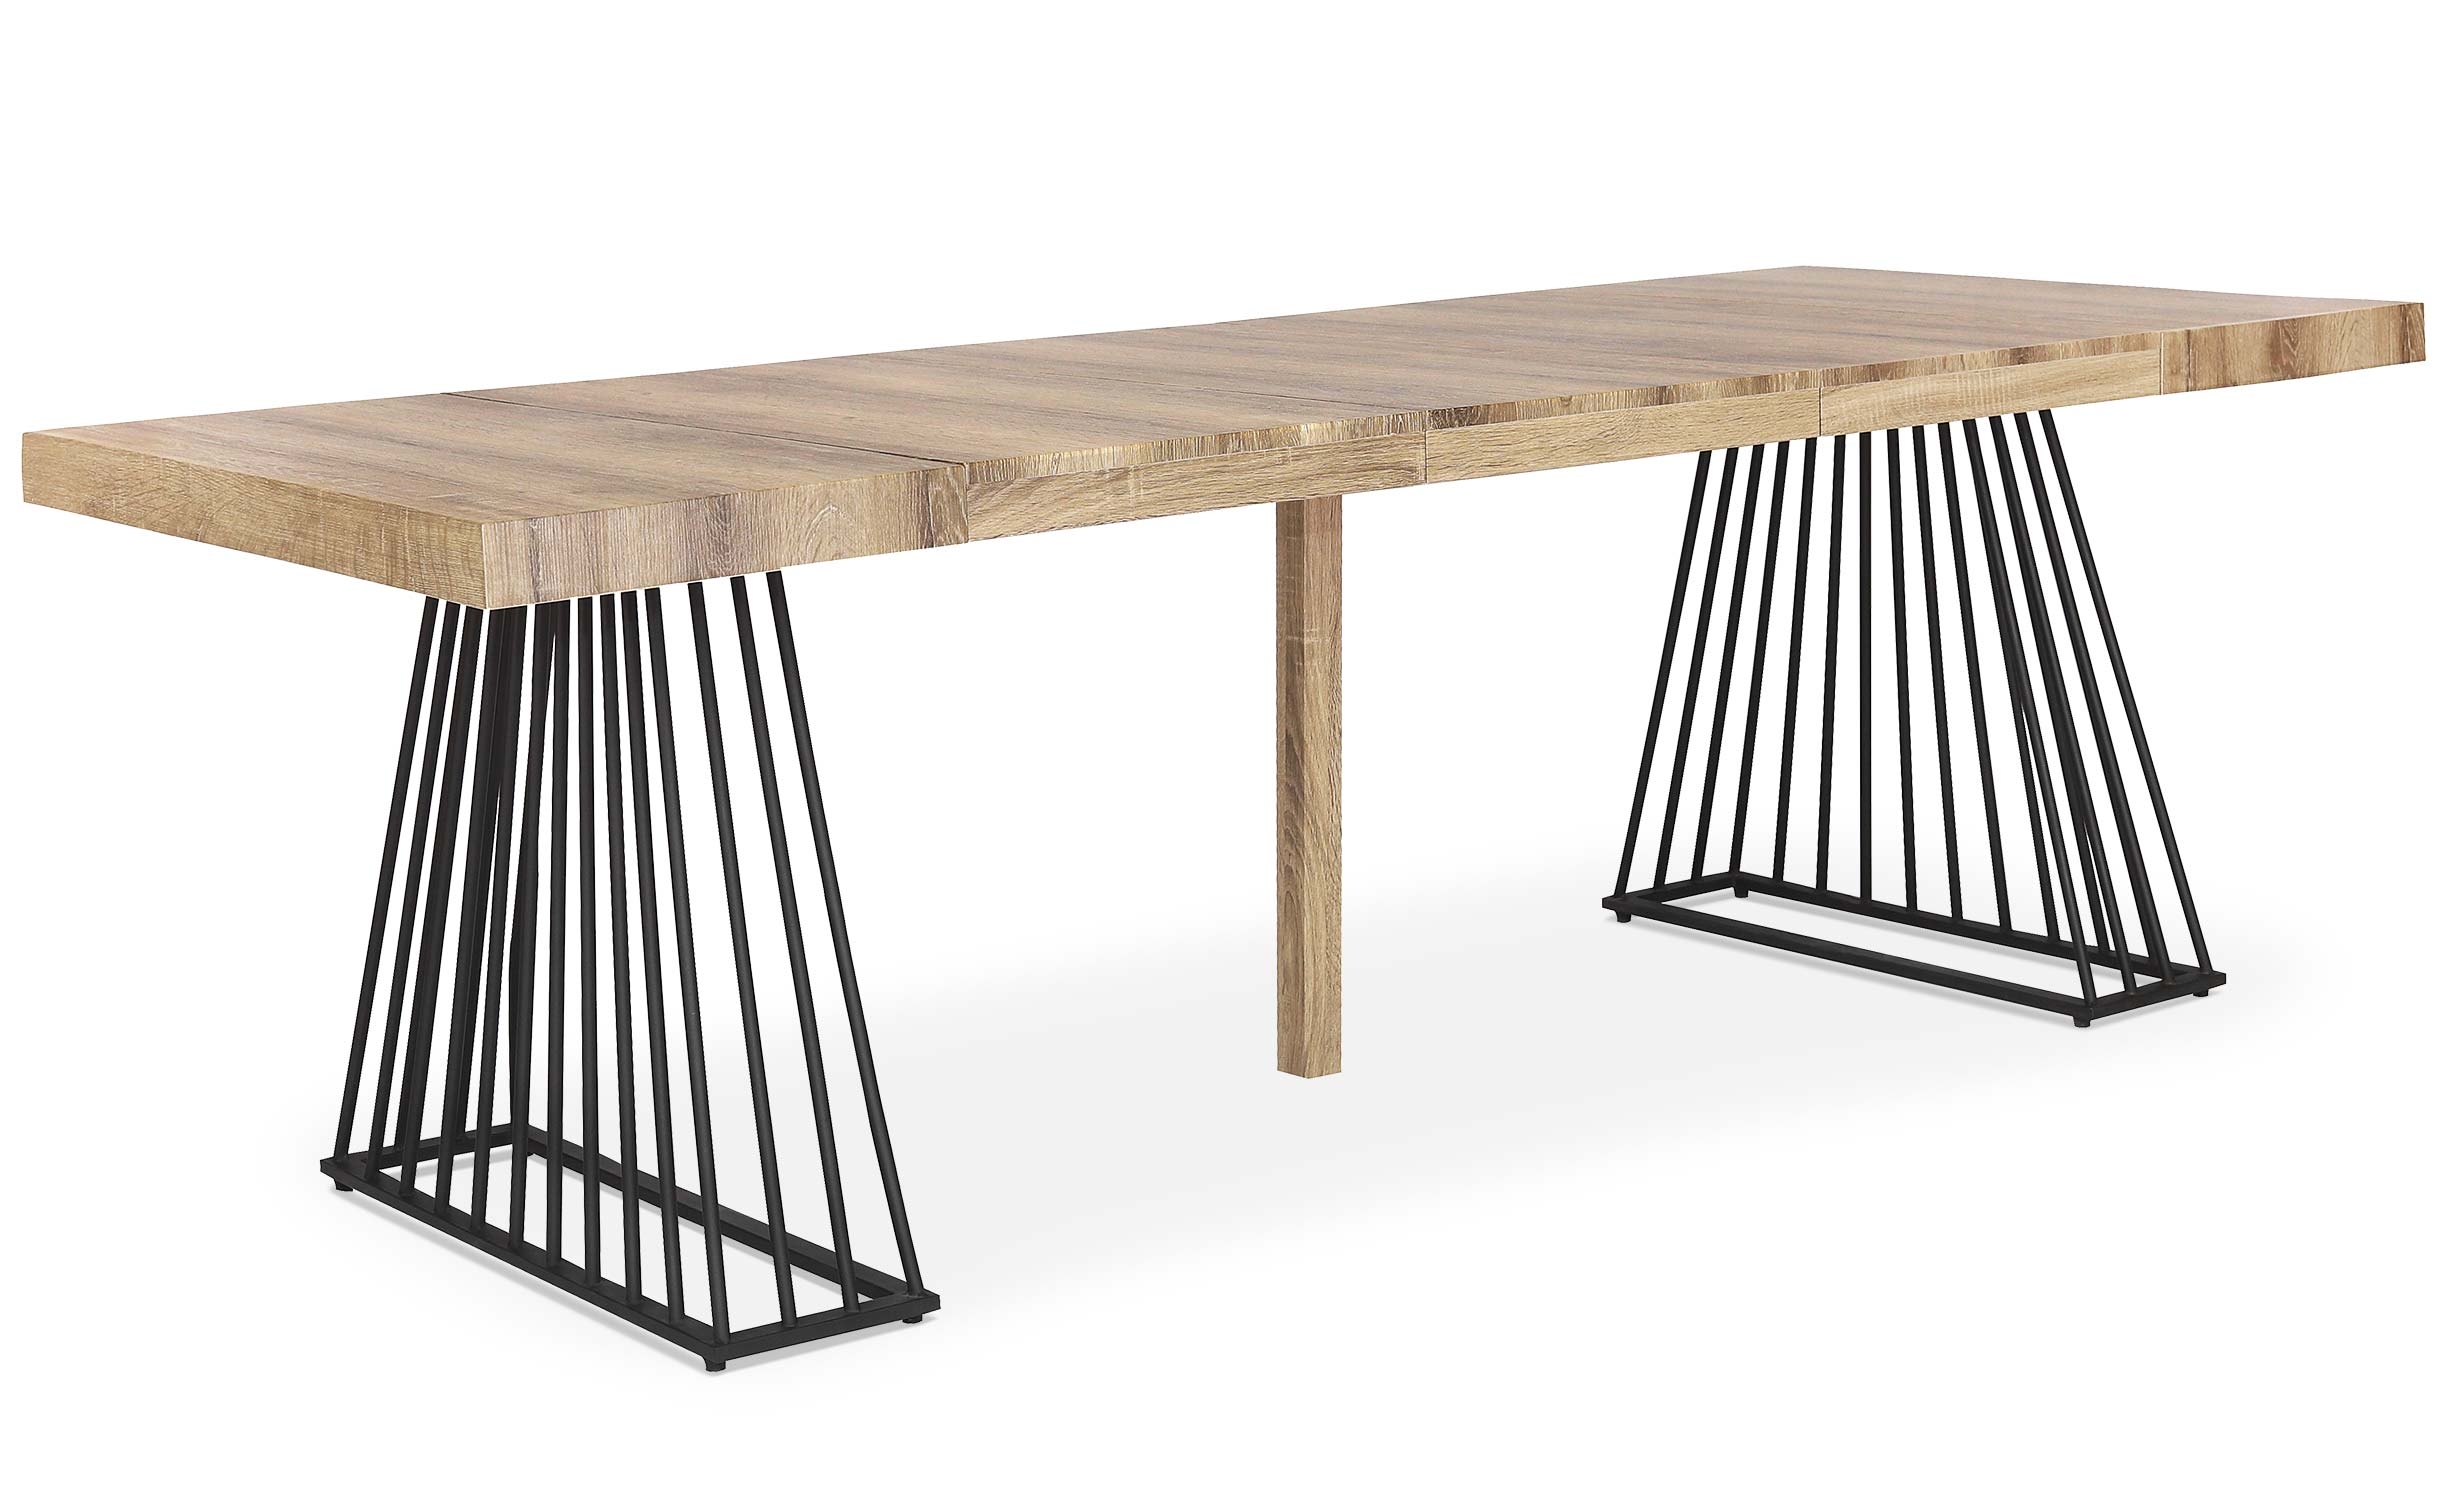 Tavolo allungabile Factory Sonoma in legno